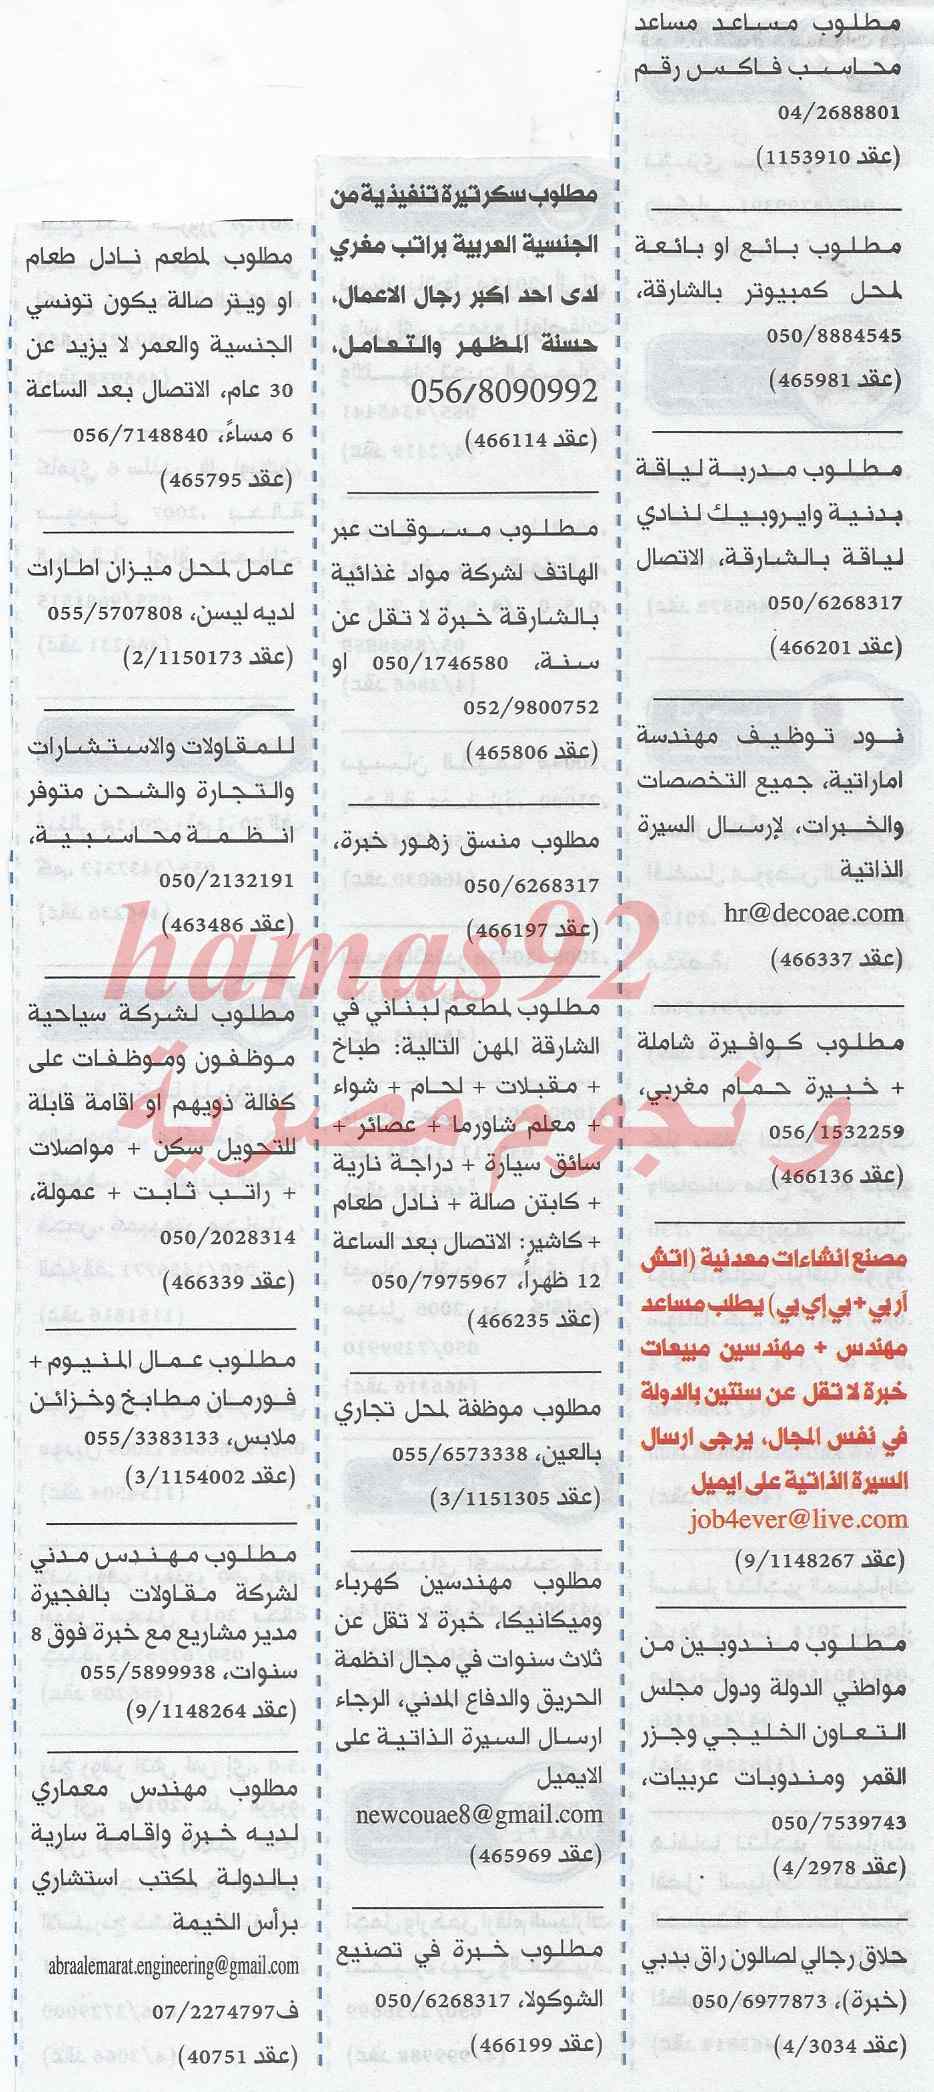 وظائف خالية 21 فبراير 2014 , وظائف جريدة الخليج الامارات يوم الجمعة 21-2-2014